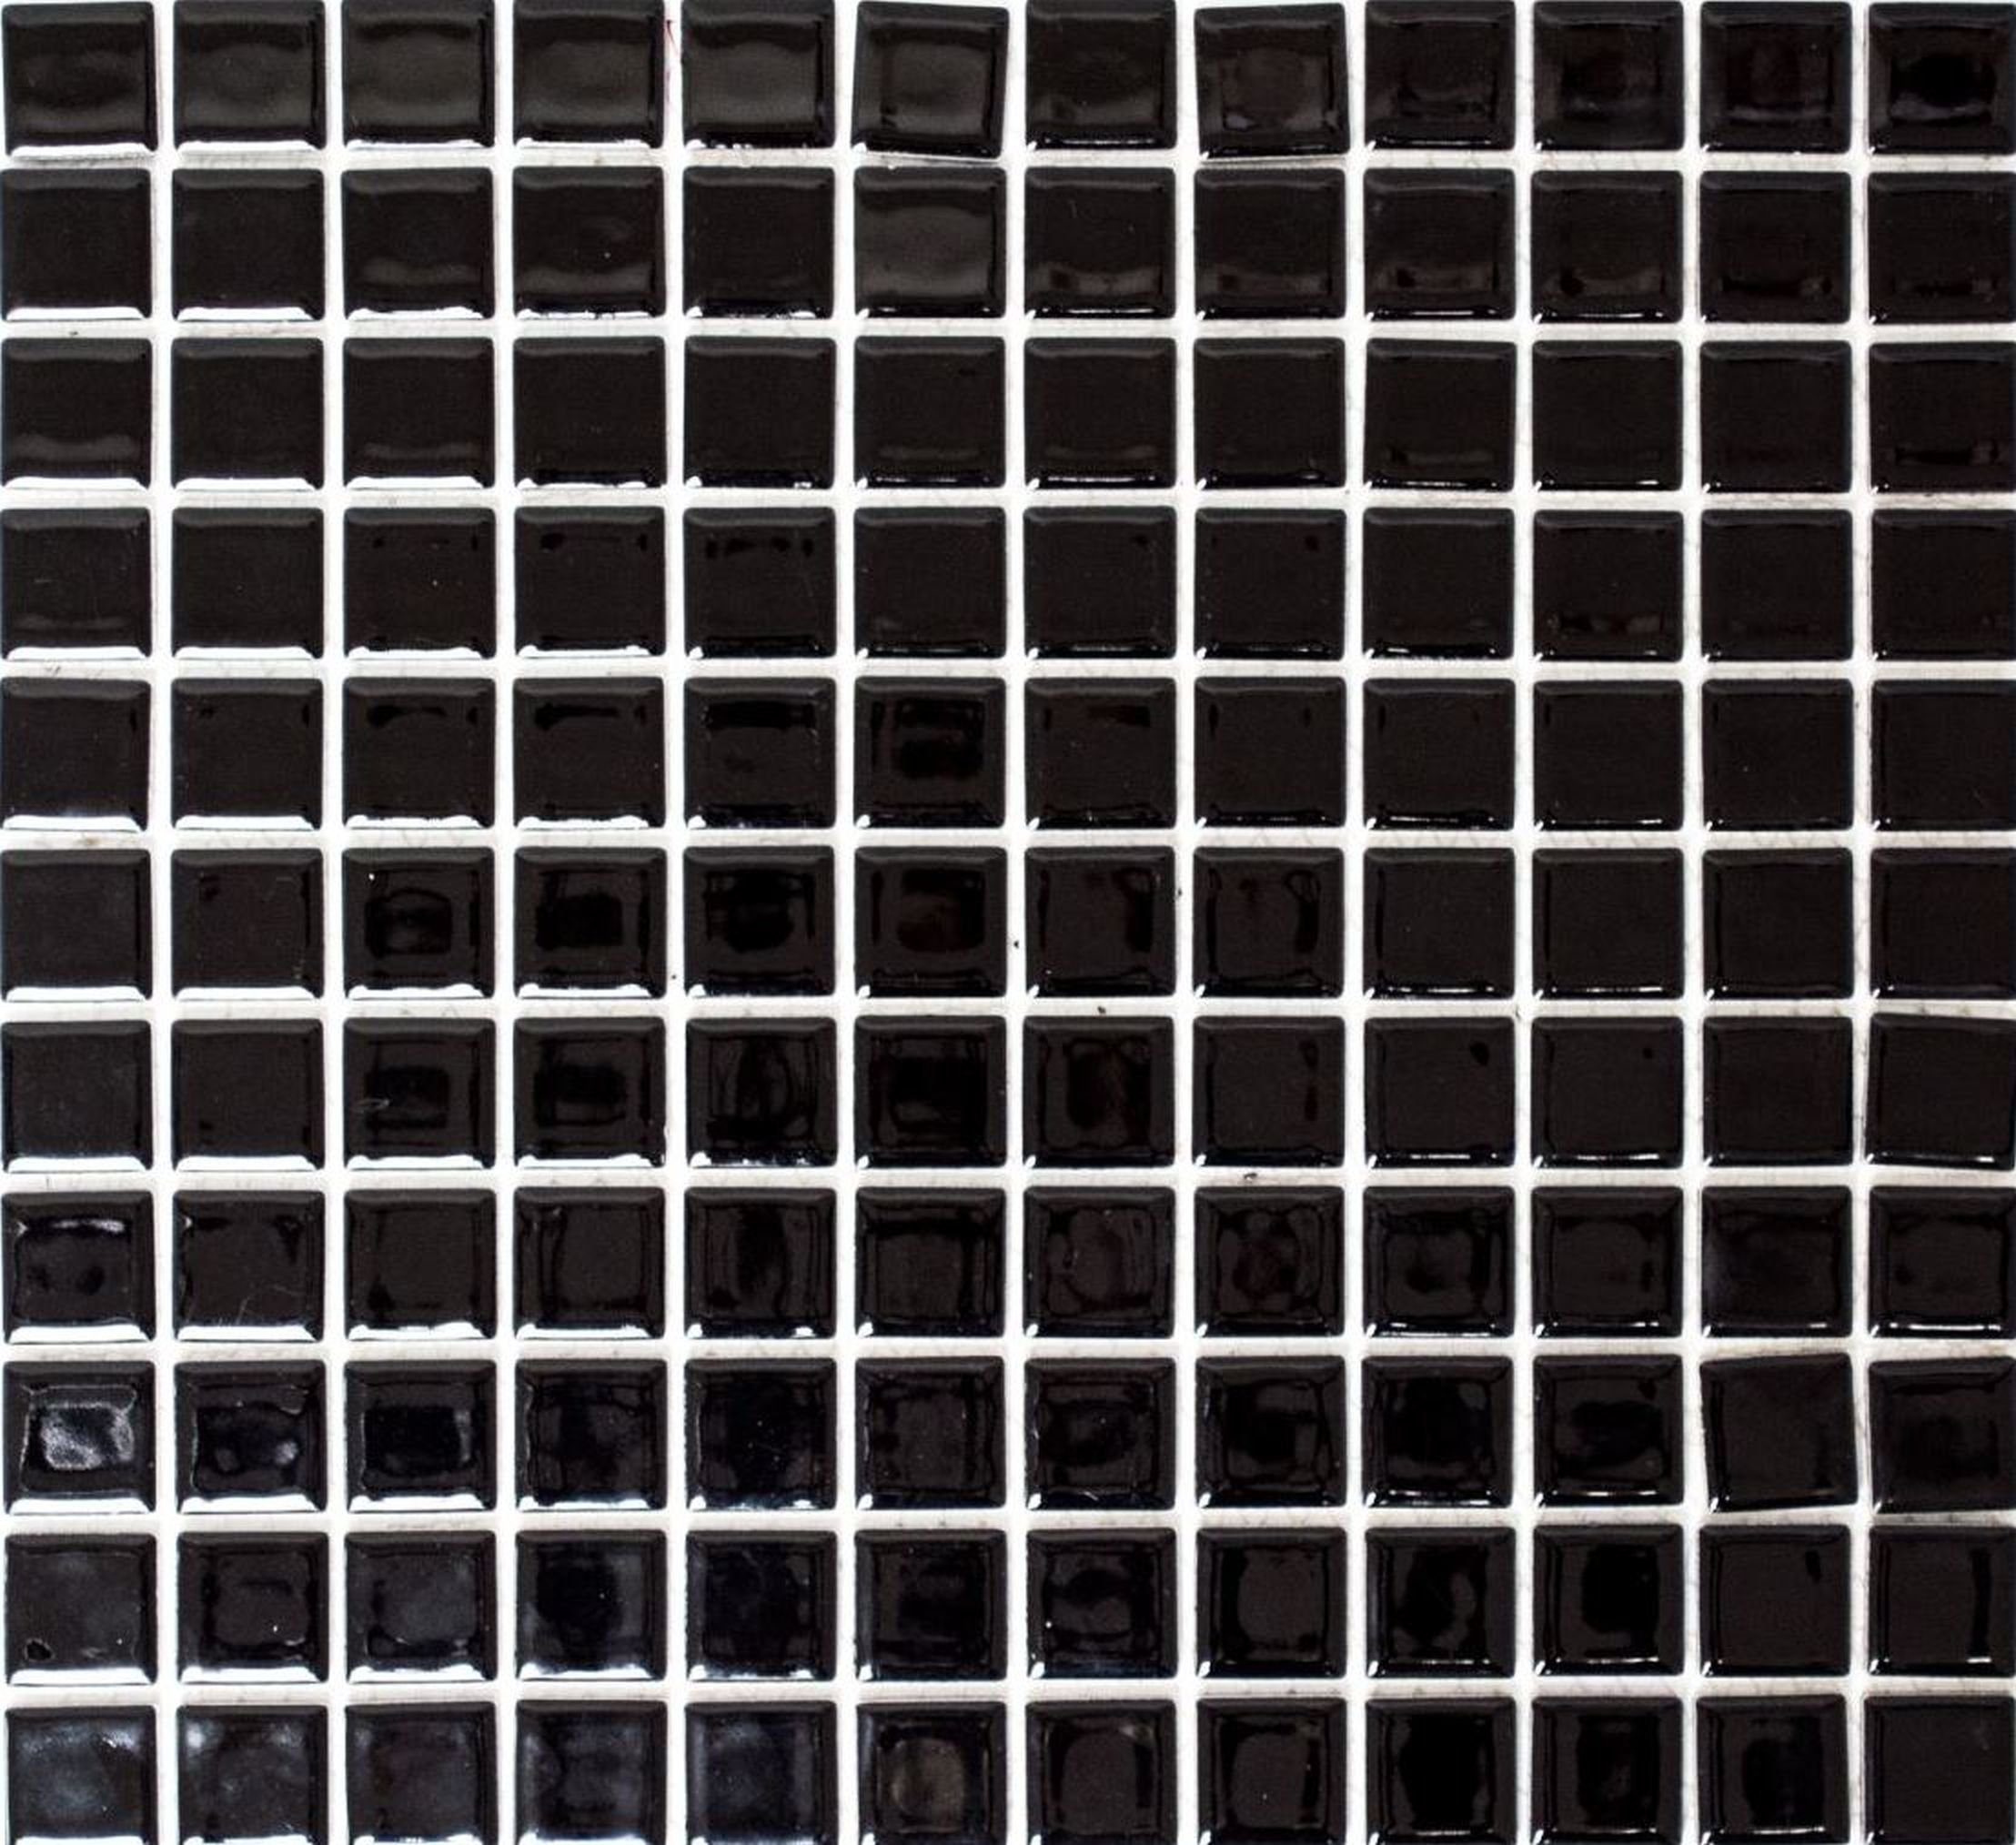 Mosani Mosaikfliesen Keramikmosaik Küche Fliesenspiegel schwarz Mosaiknetz hochglanz